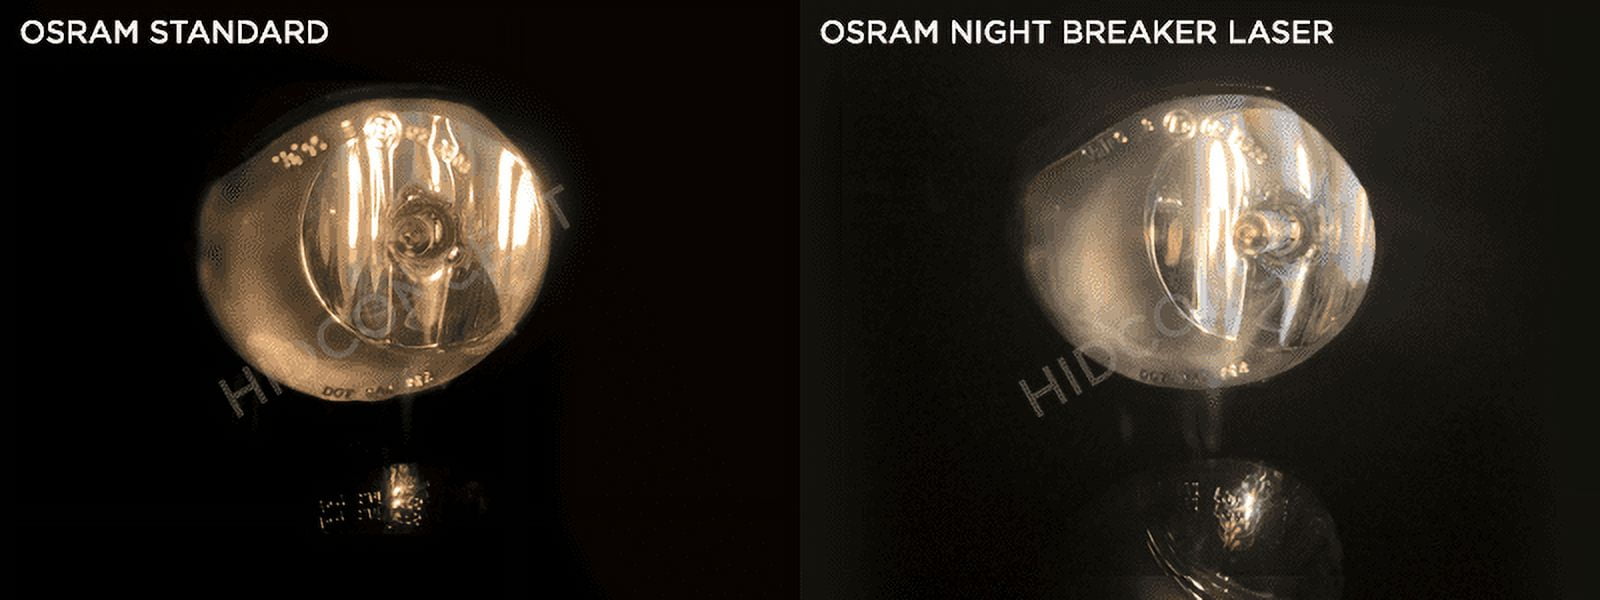 OSRAM Night Breaker Laser (Next Generation) HB3